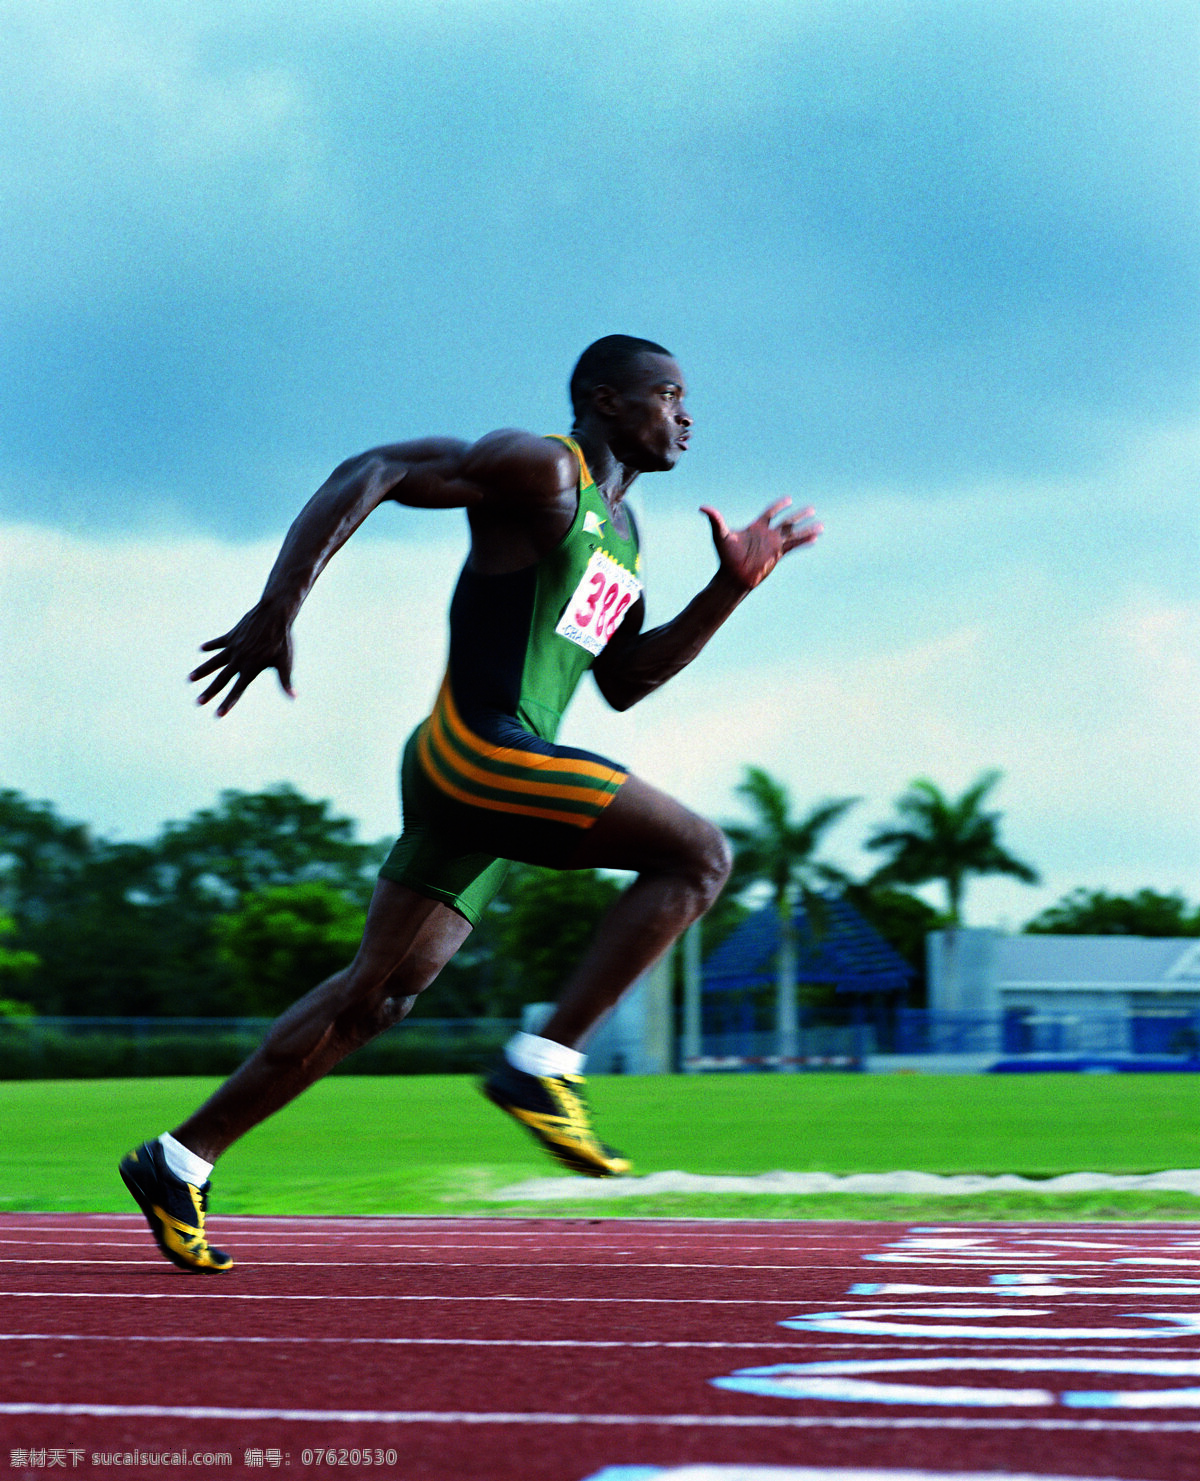 跑步 黑人运动员 人物图库 人物摄影 摄影图库